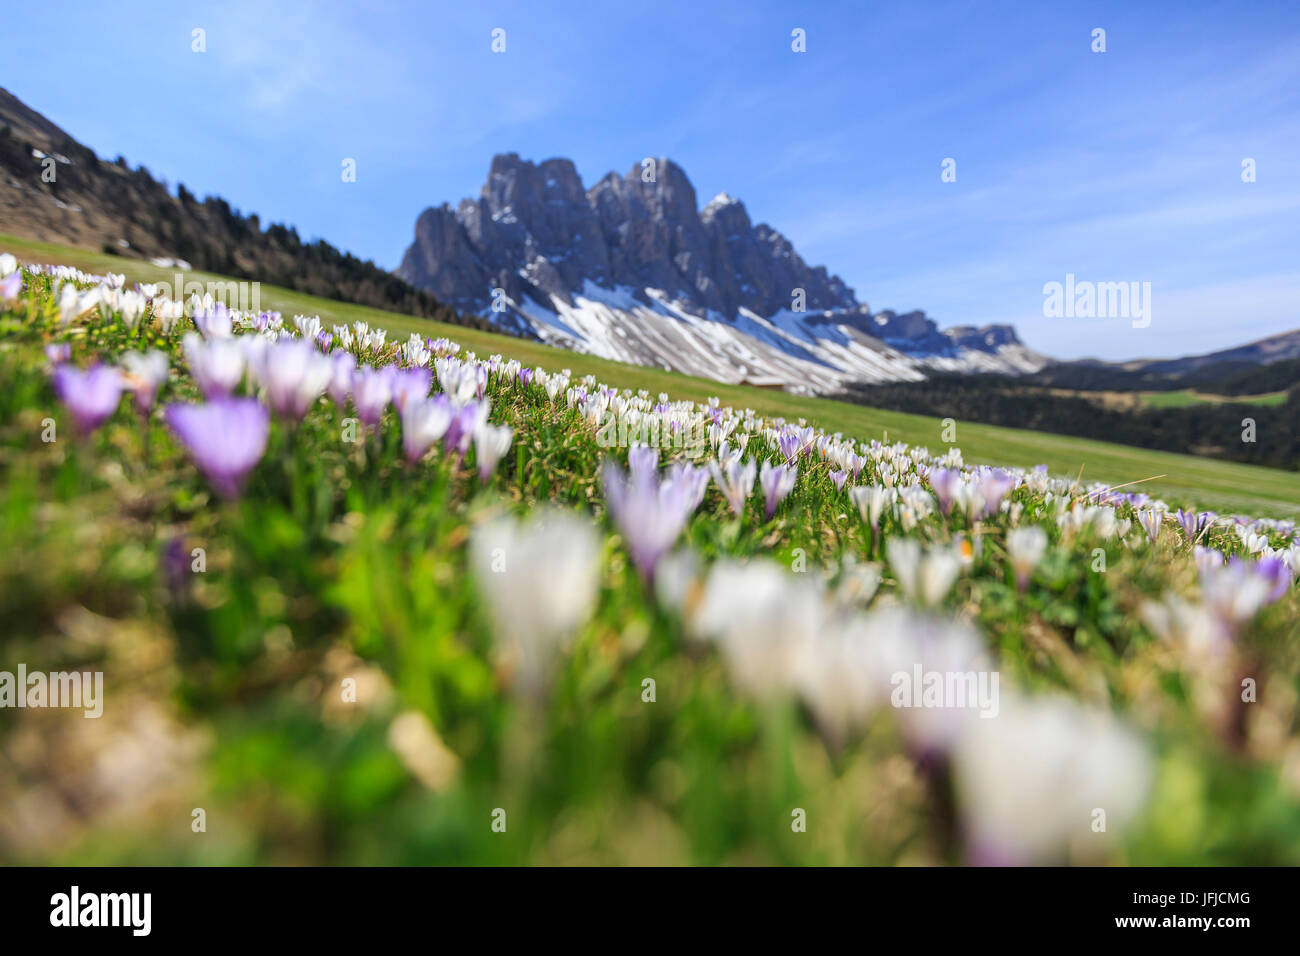 Blumen blühen auf den Wiesen am Fuße des Geisler, Malga Gampen Villnösser Tal, South Tyrol Dolomiten Italien Europa Stockfoto